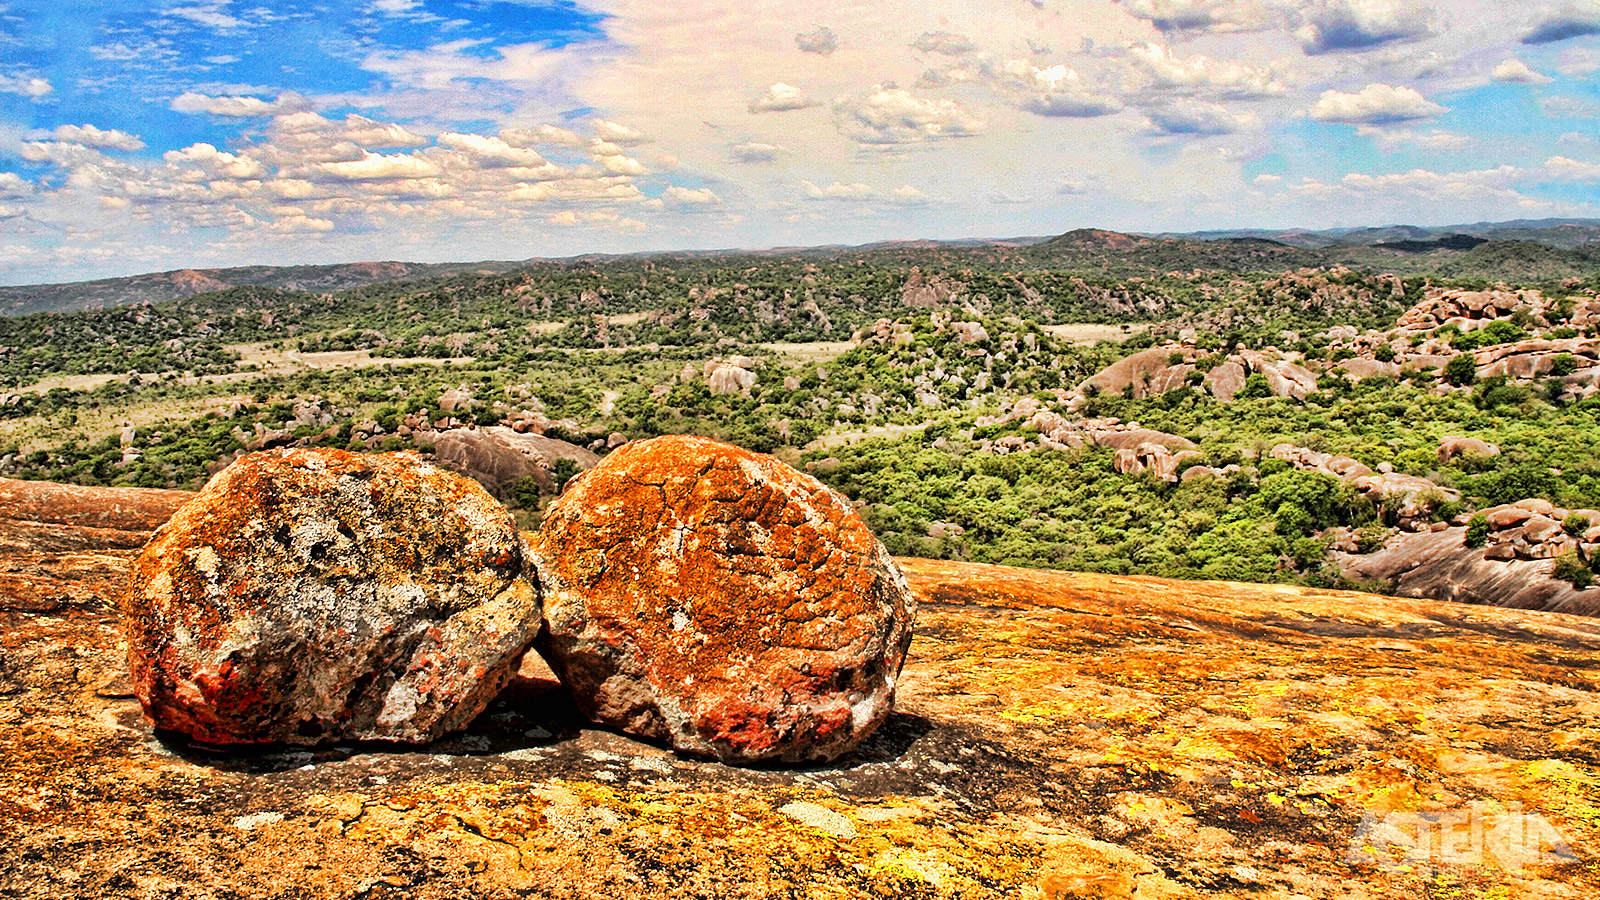 Beklim de rotsen die hoog boven het landschap uitsteken voor een fenomenaal uitzicht